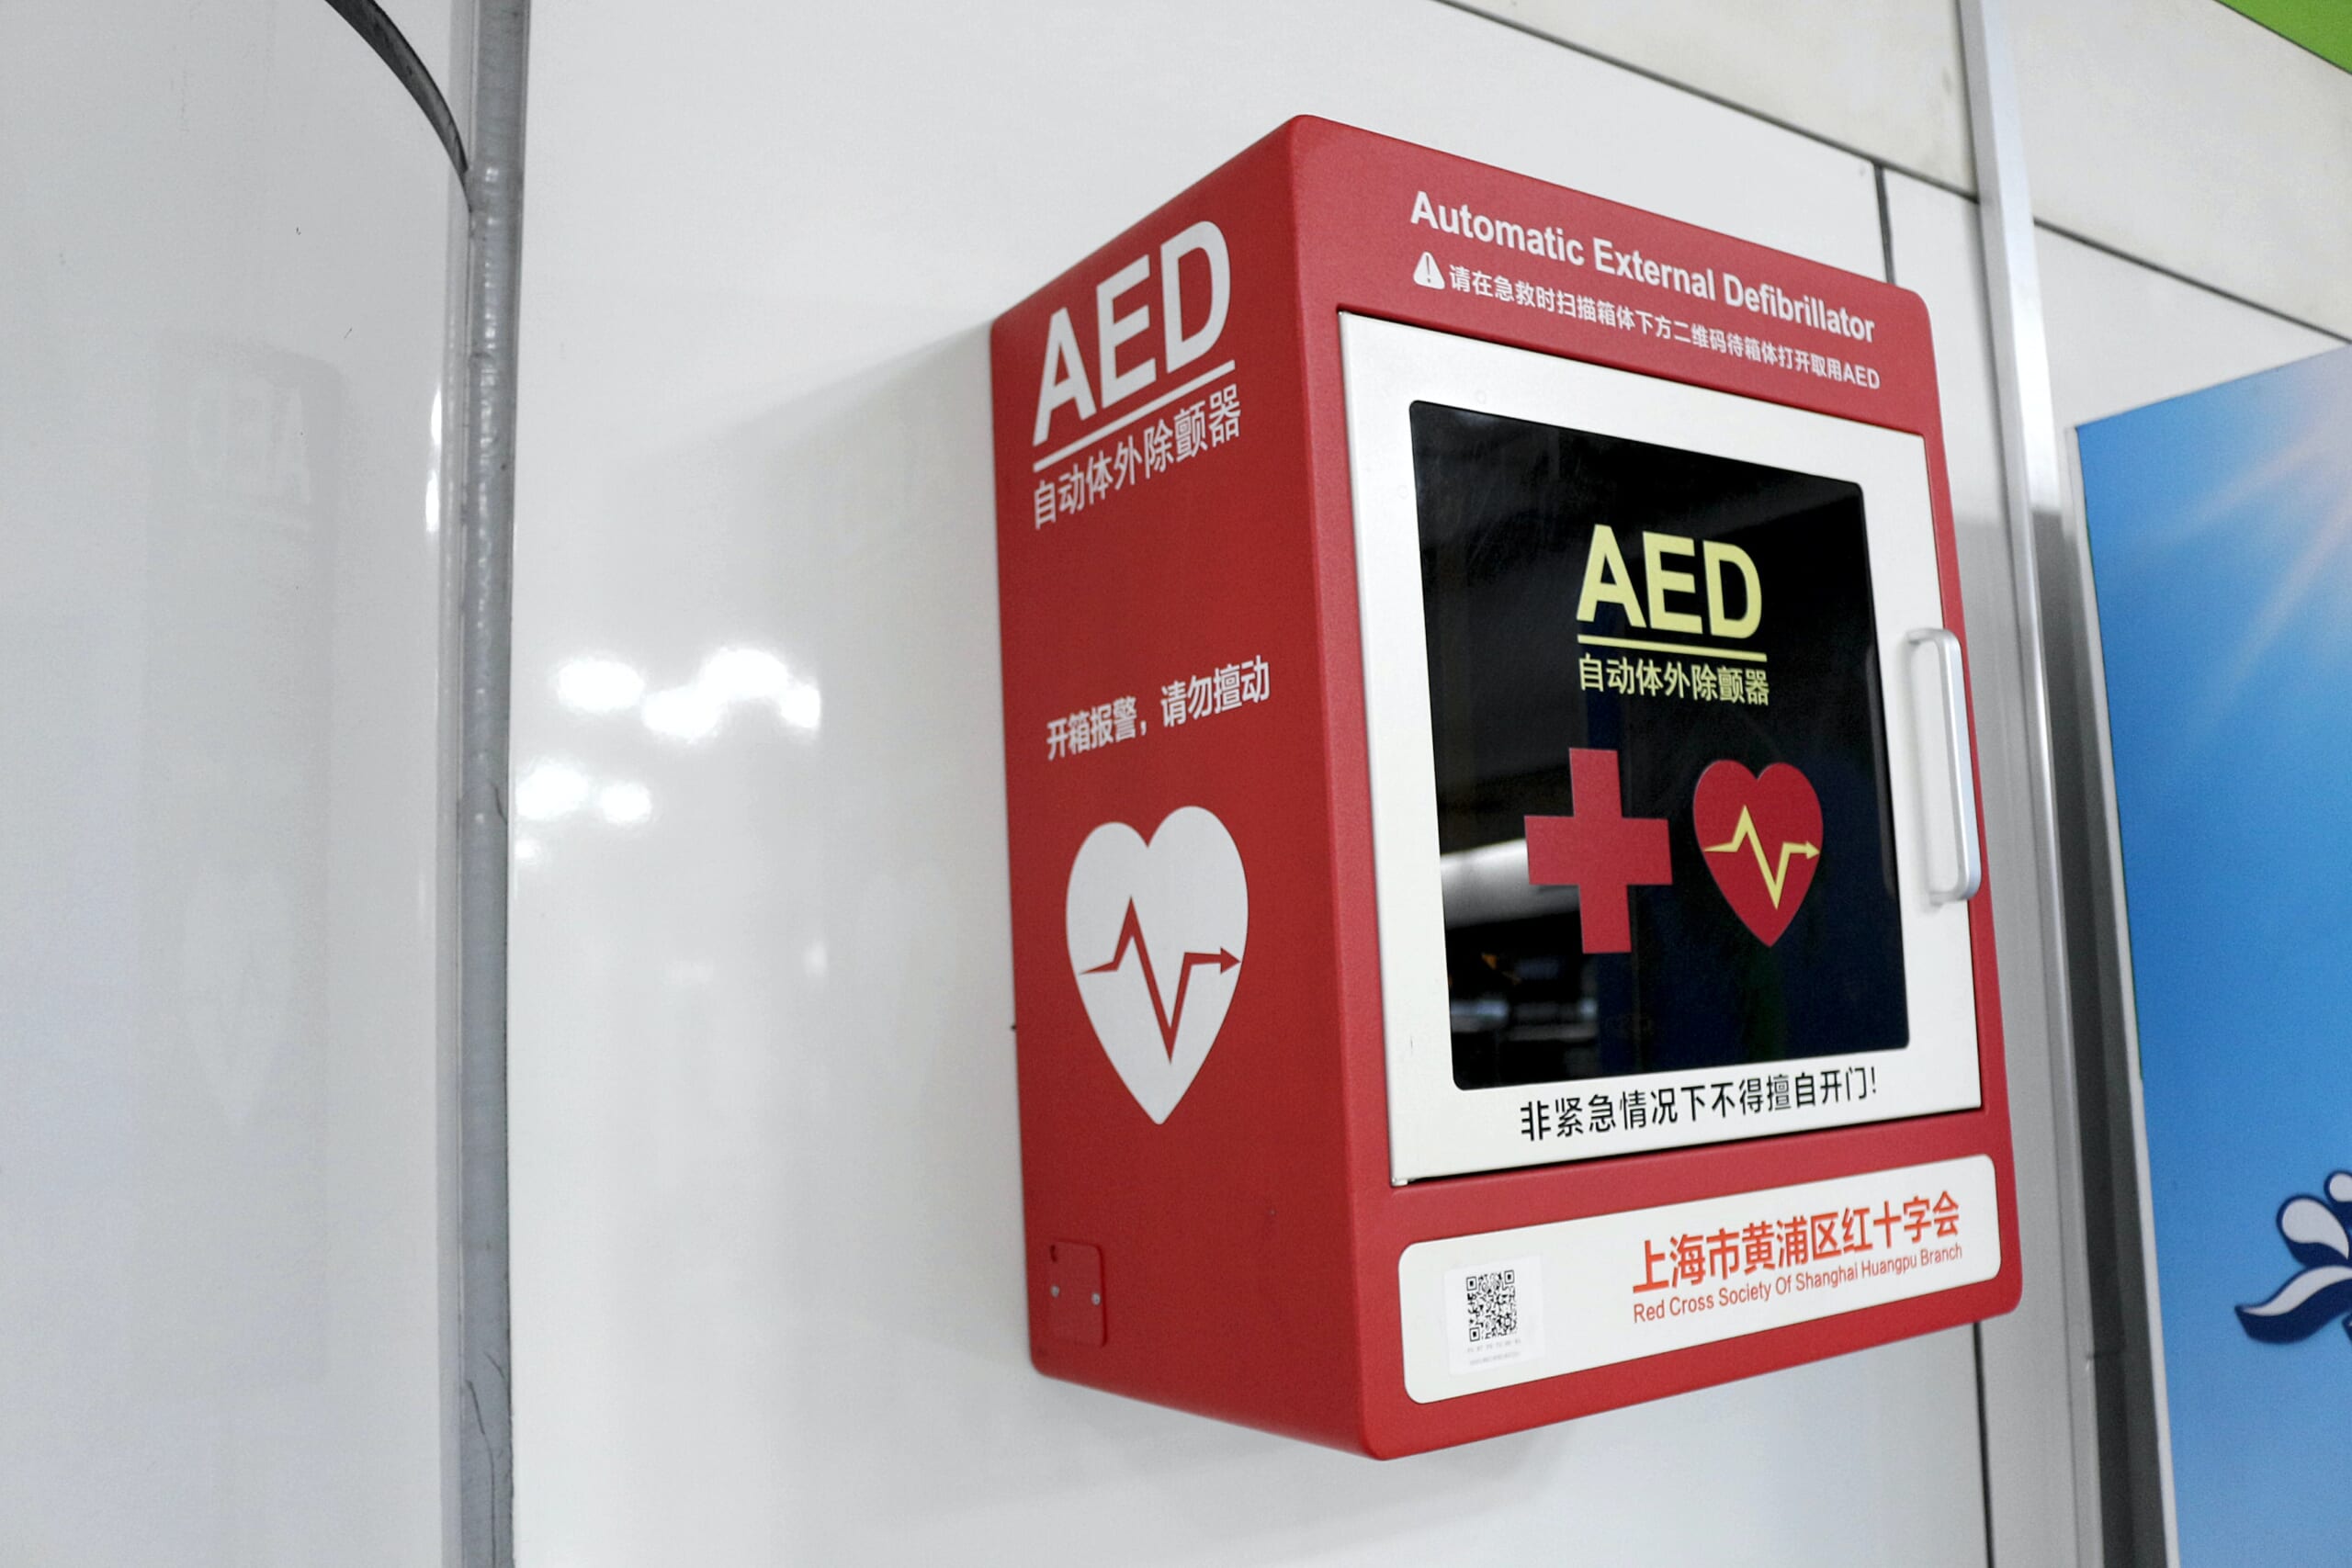 【医療機器】AED(除細動器)のおすすめメーカーと価格相場